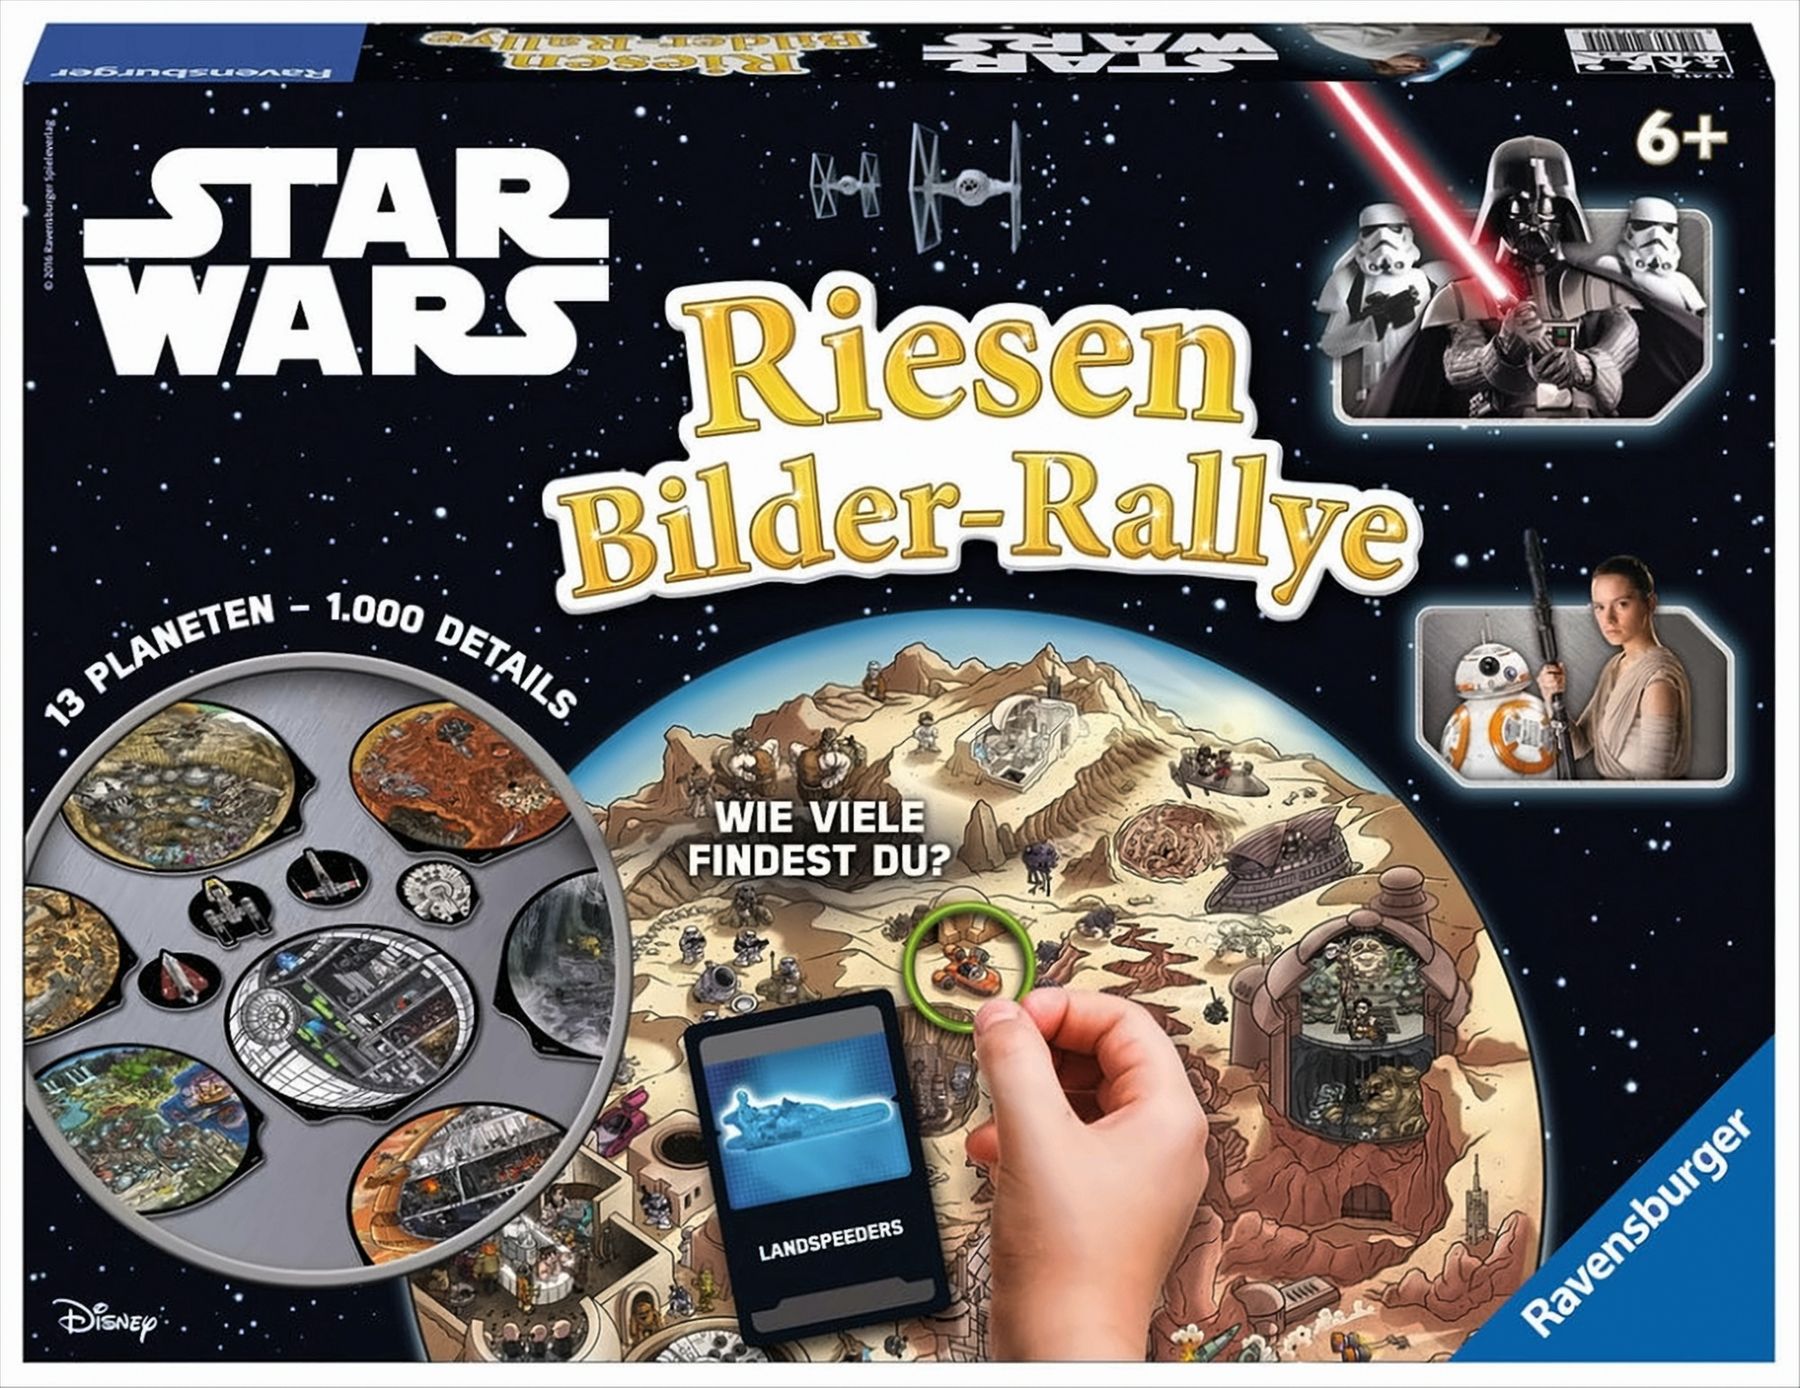 Star Wars Riesen Bilder-Rally von Ravensburger Spieleverlag